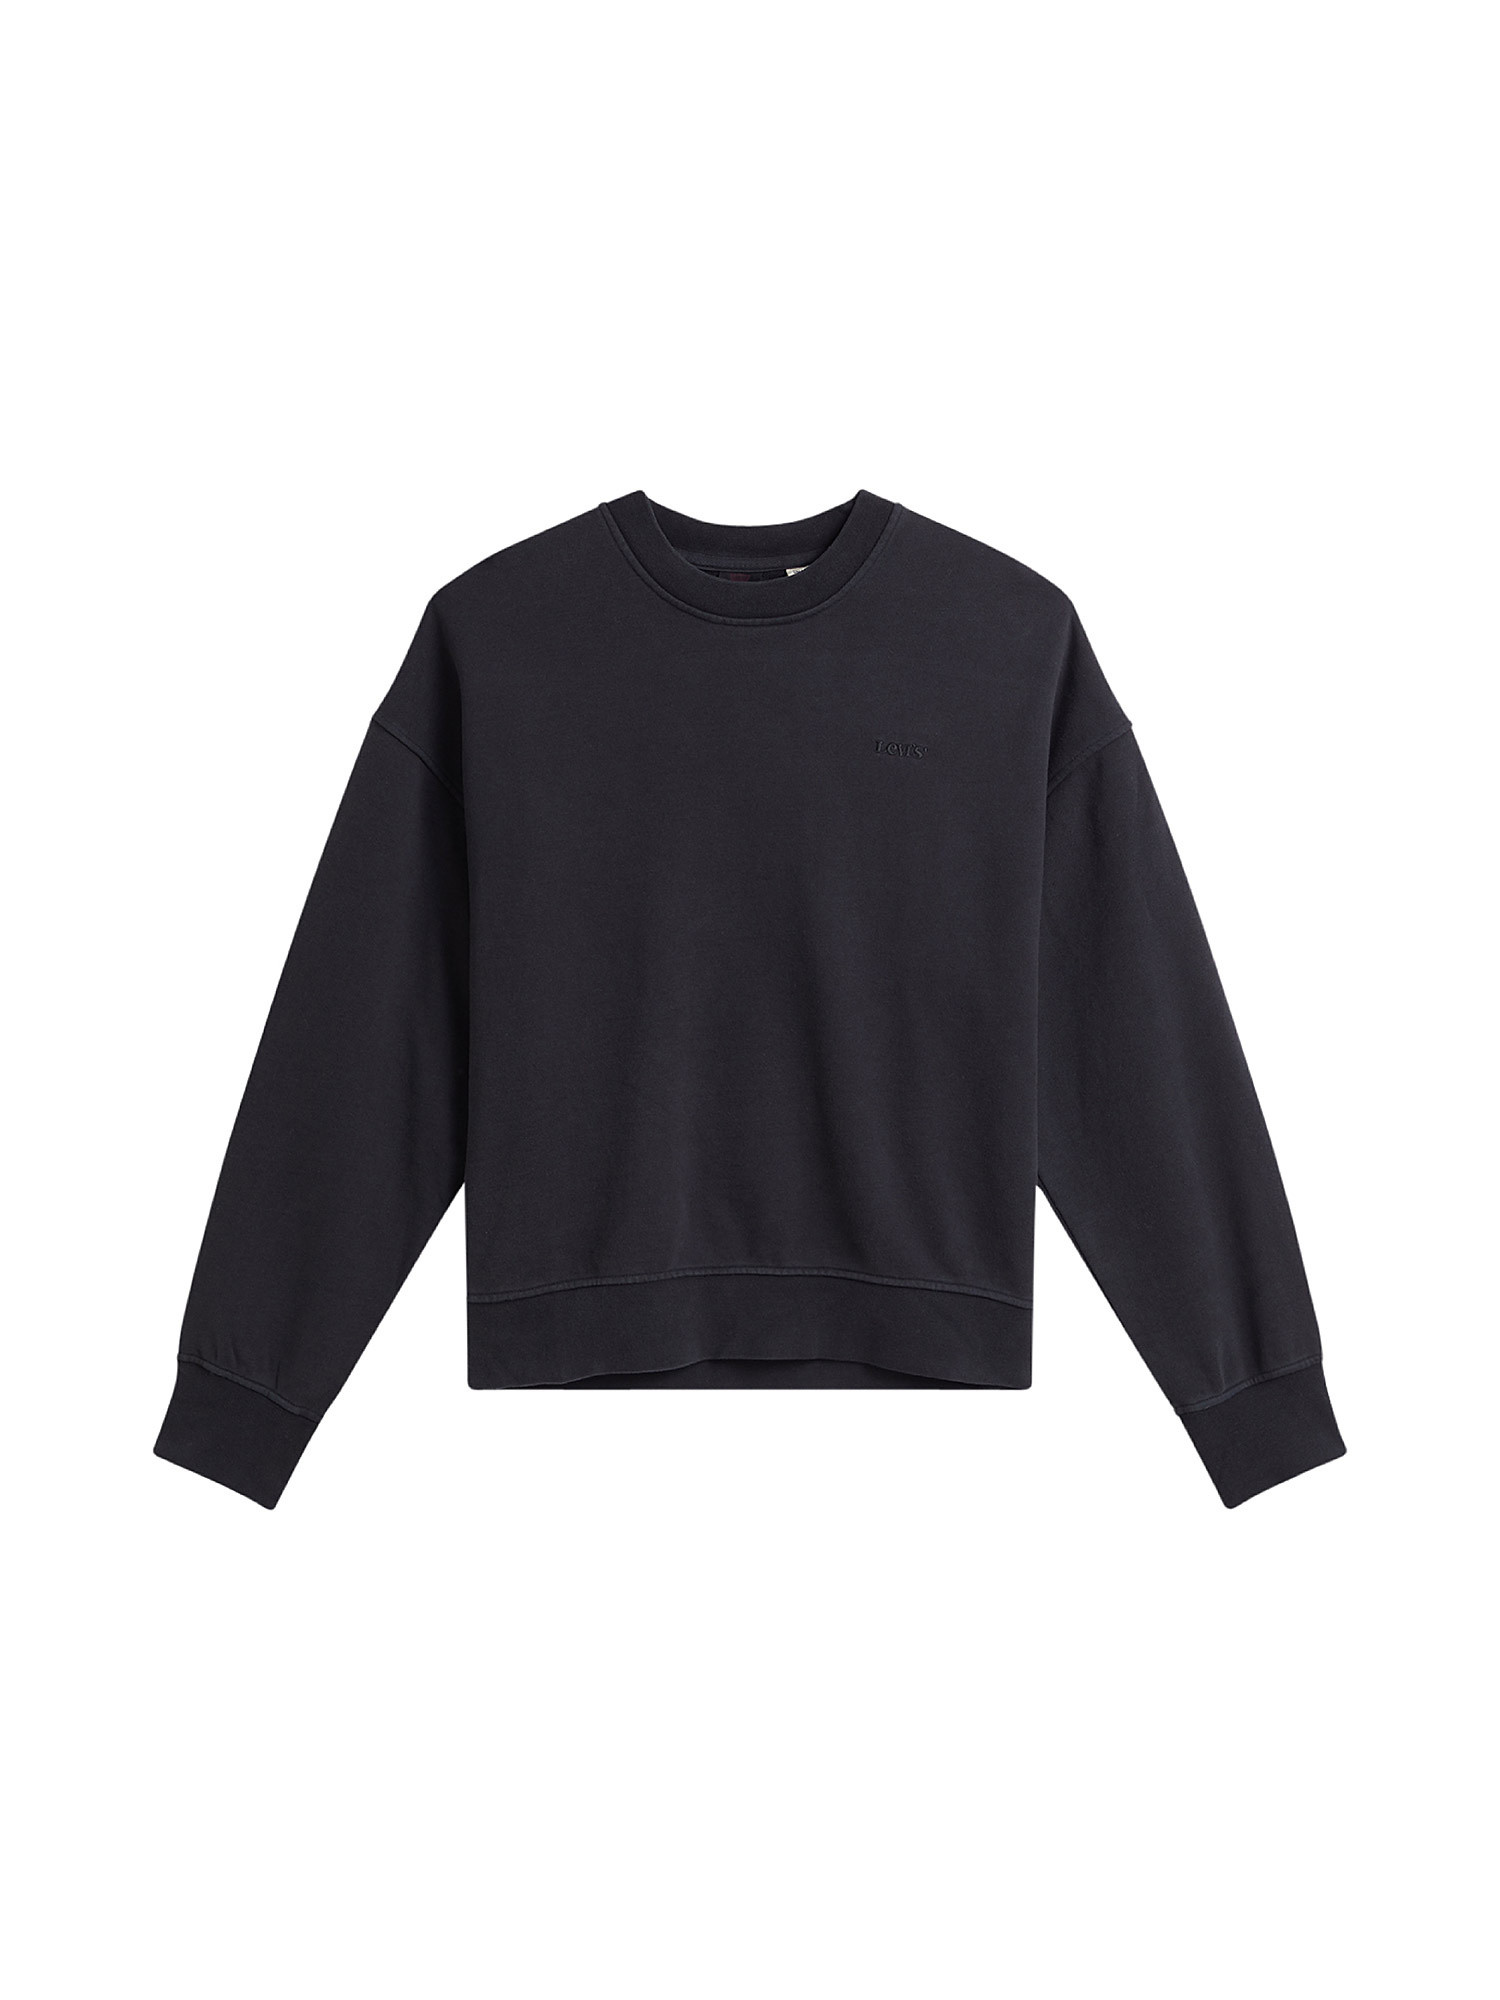 WFH Loungewear sweatshirt, Black, large image number 0